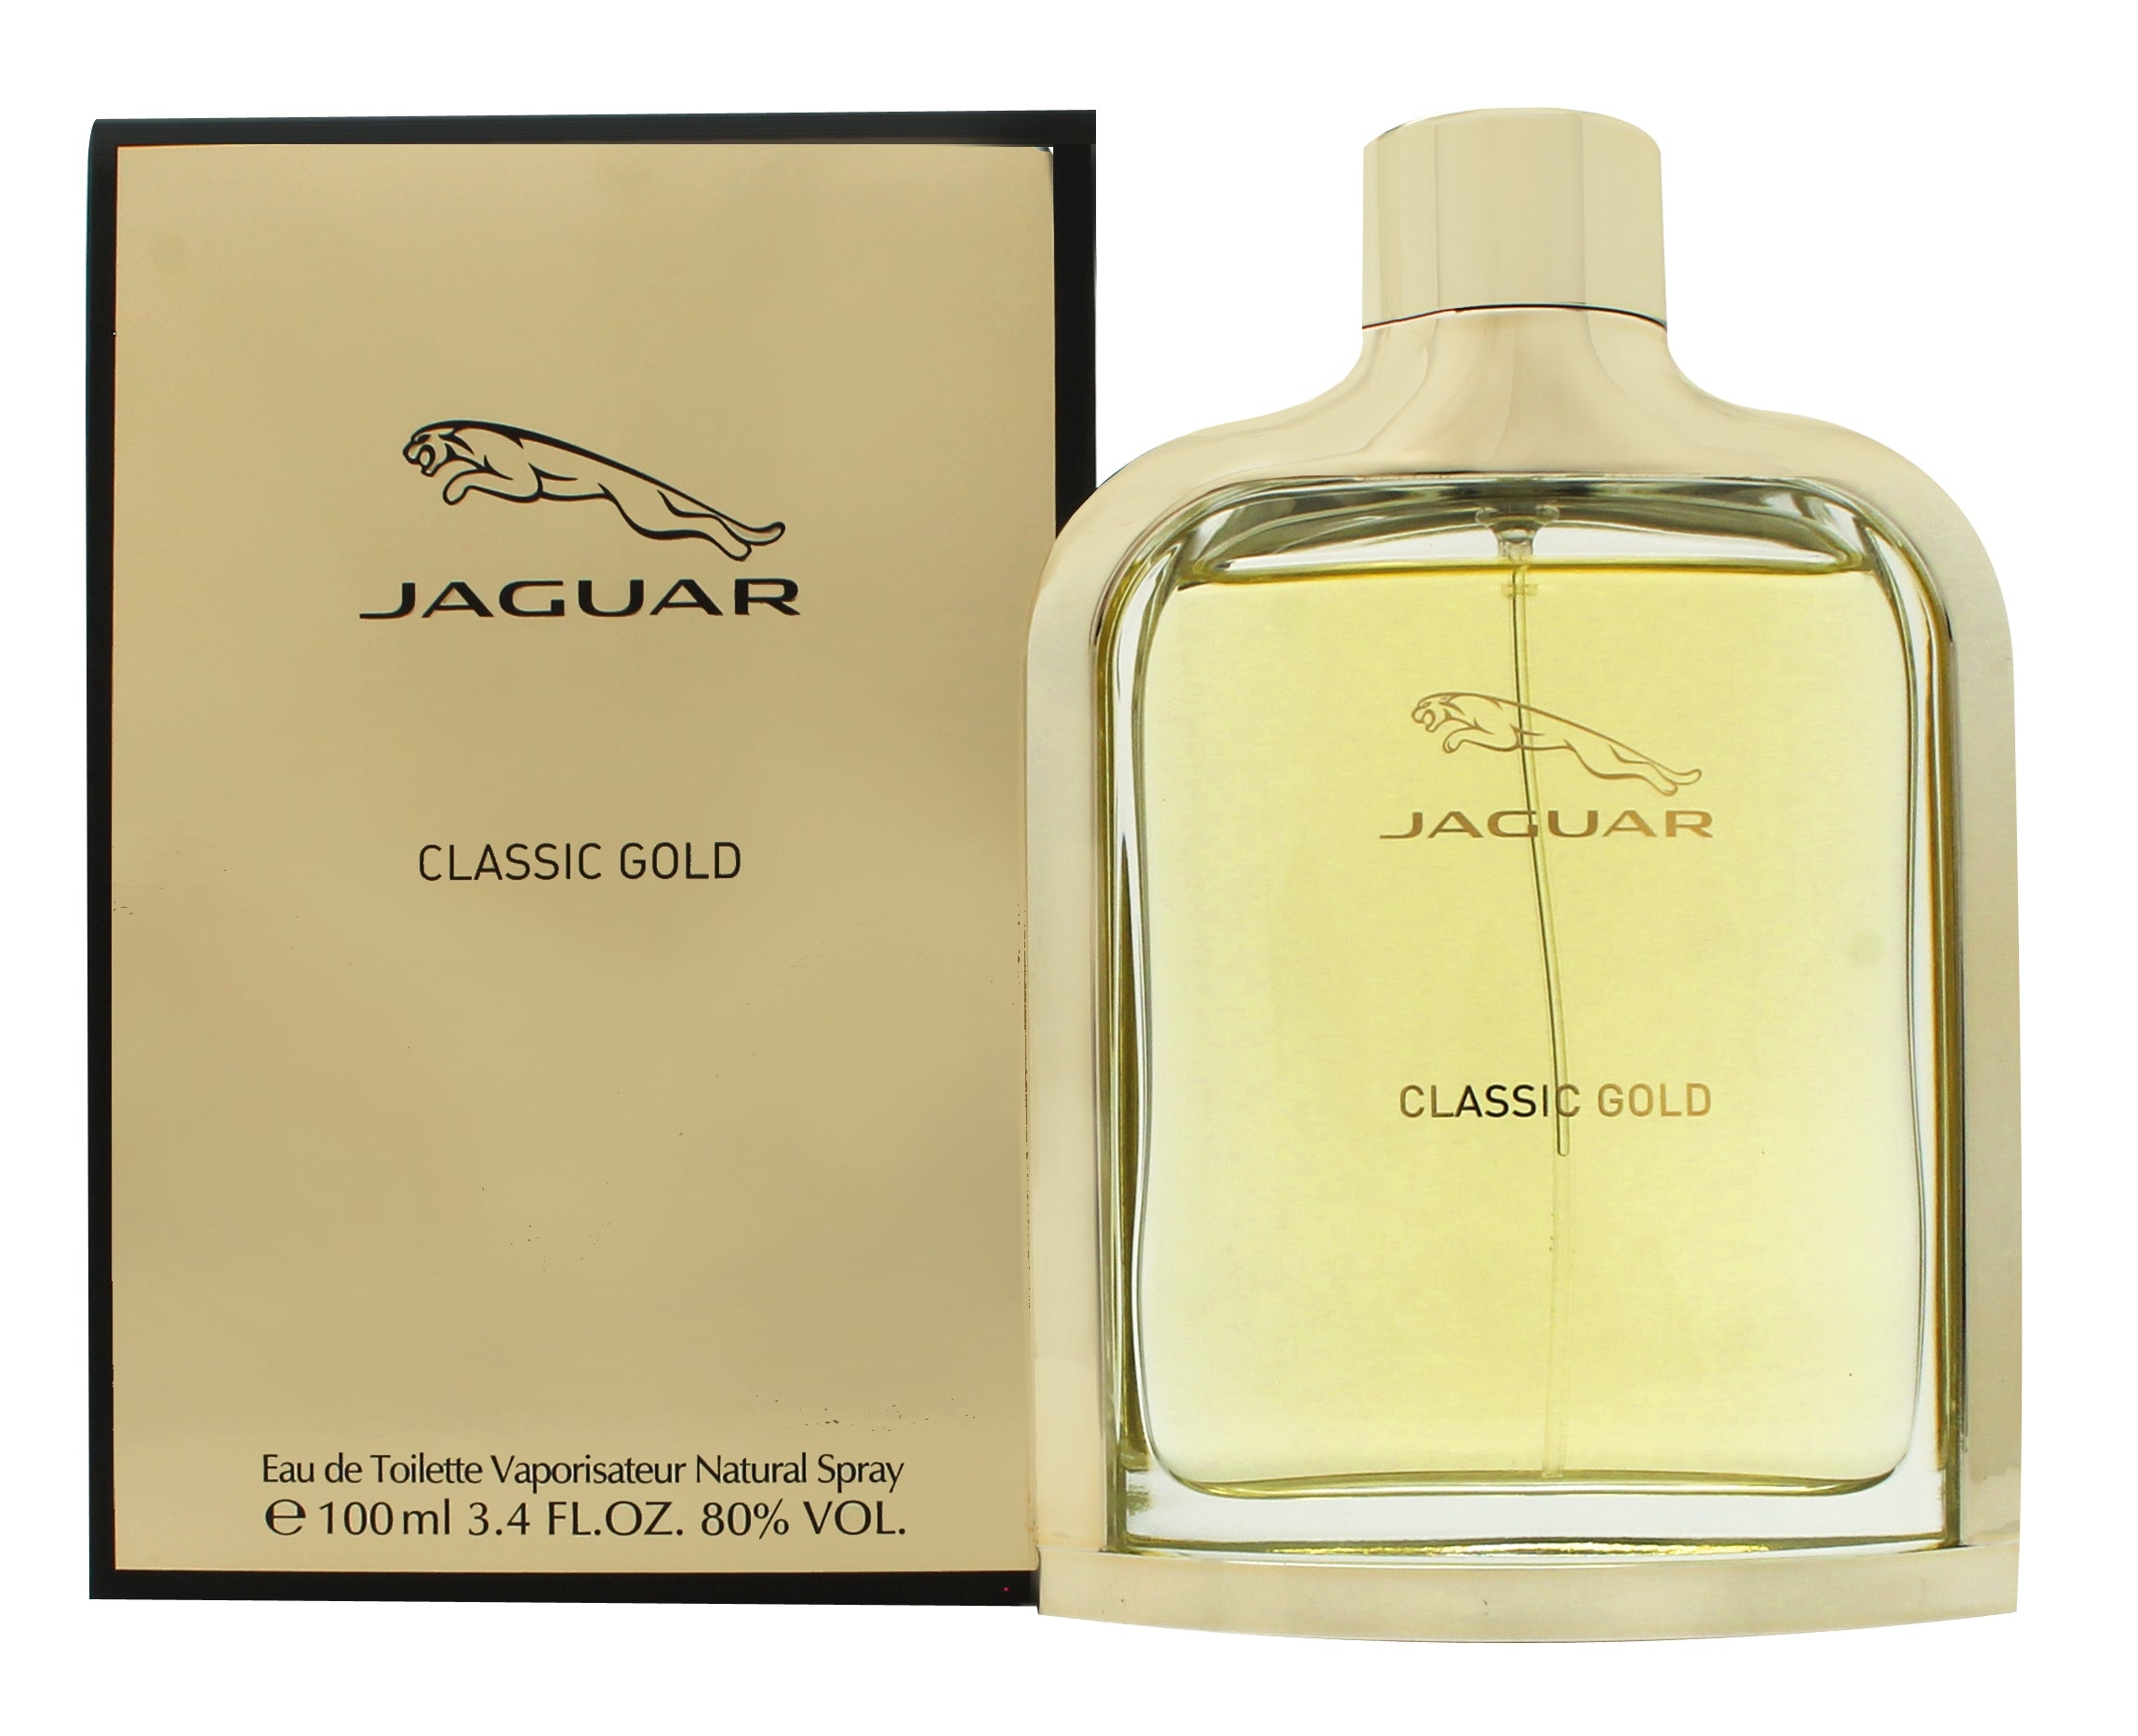 View Jaguar Classic Gold Eau de Toilette 100ml Spray information